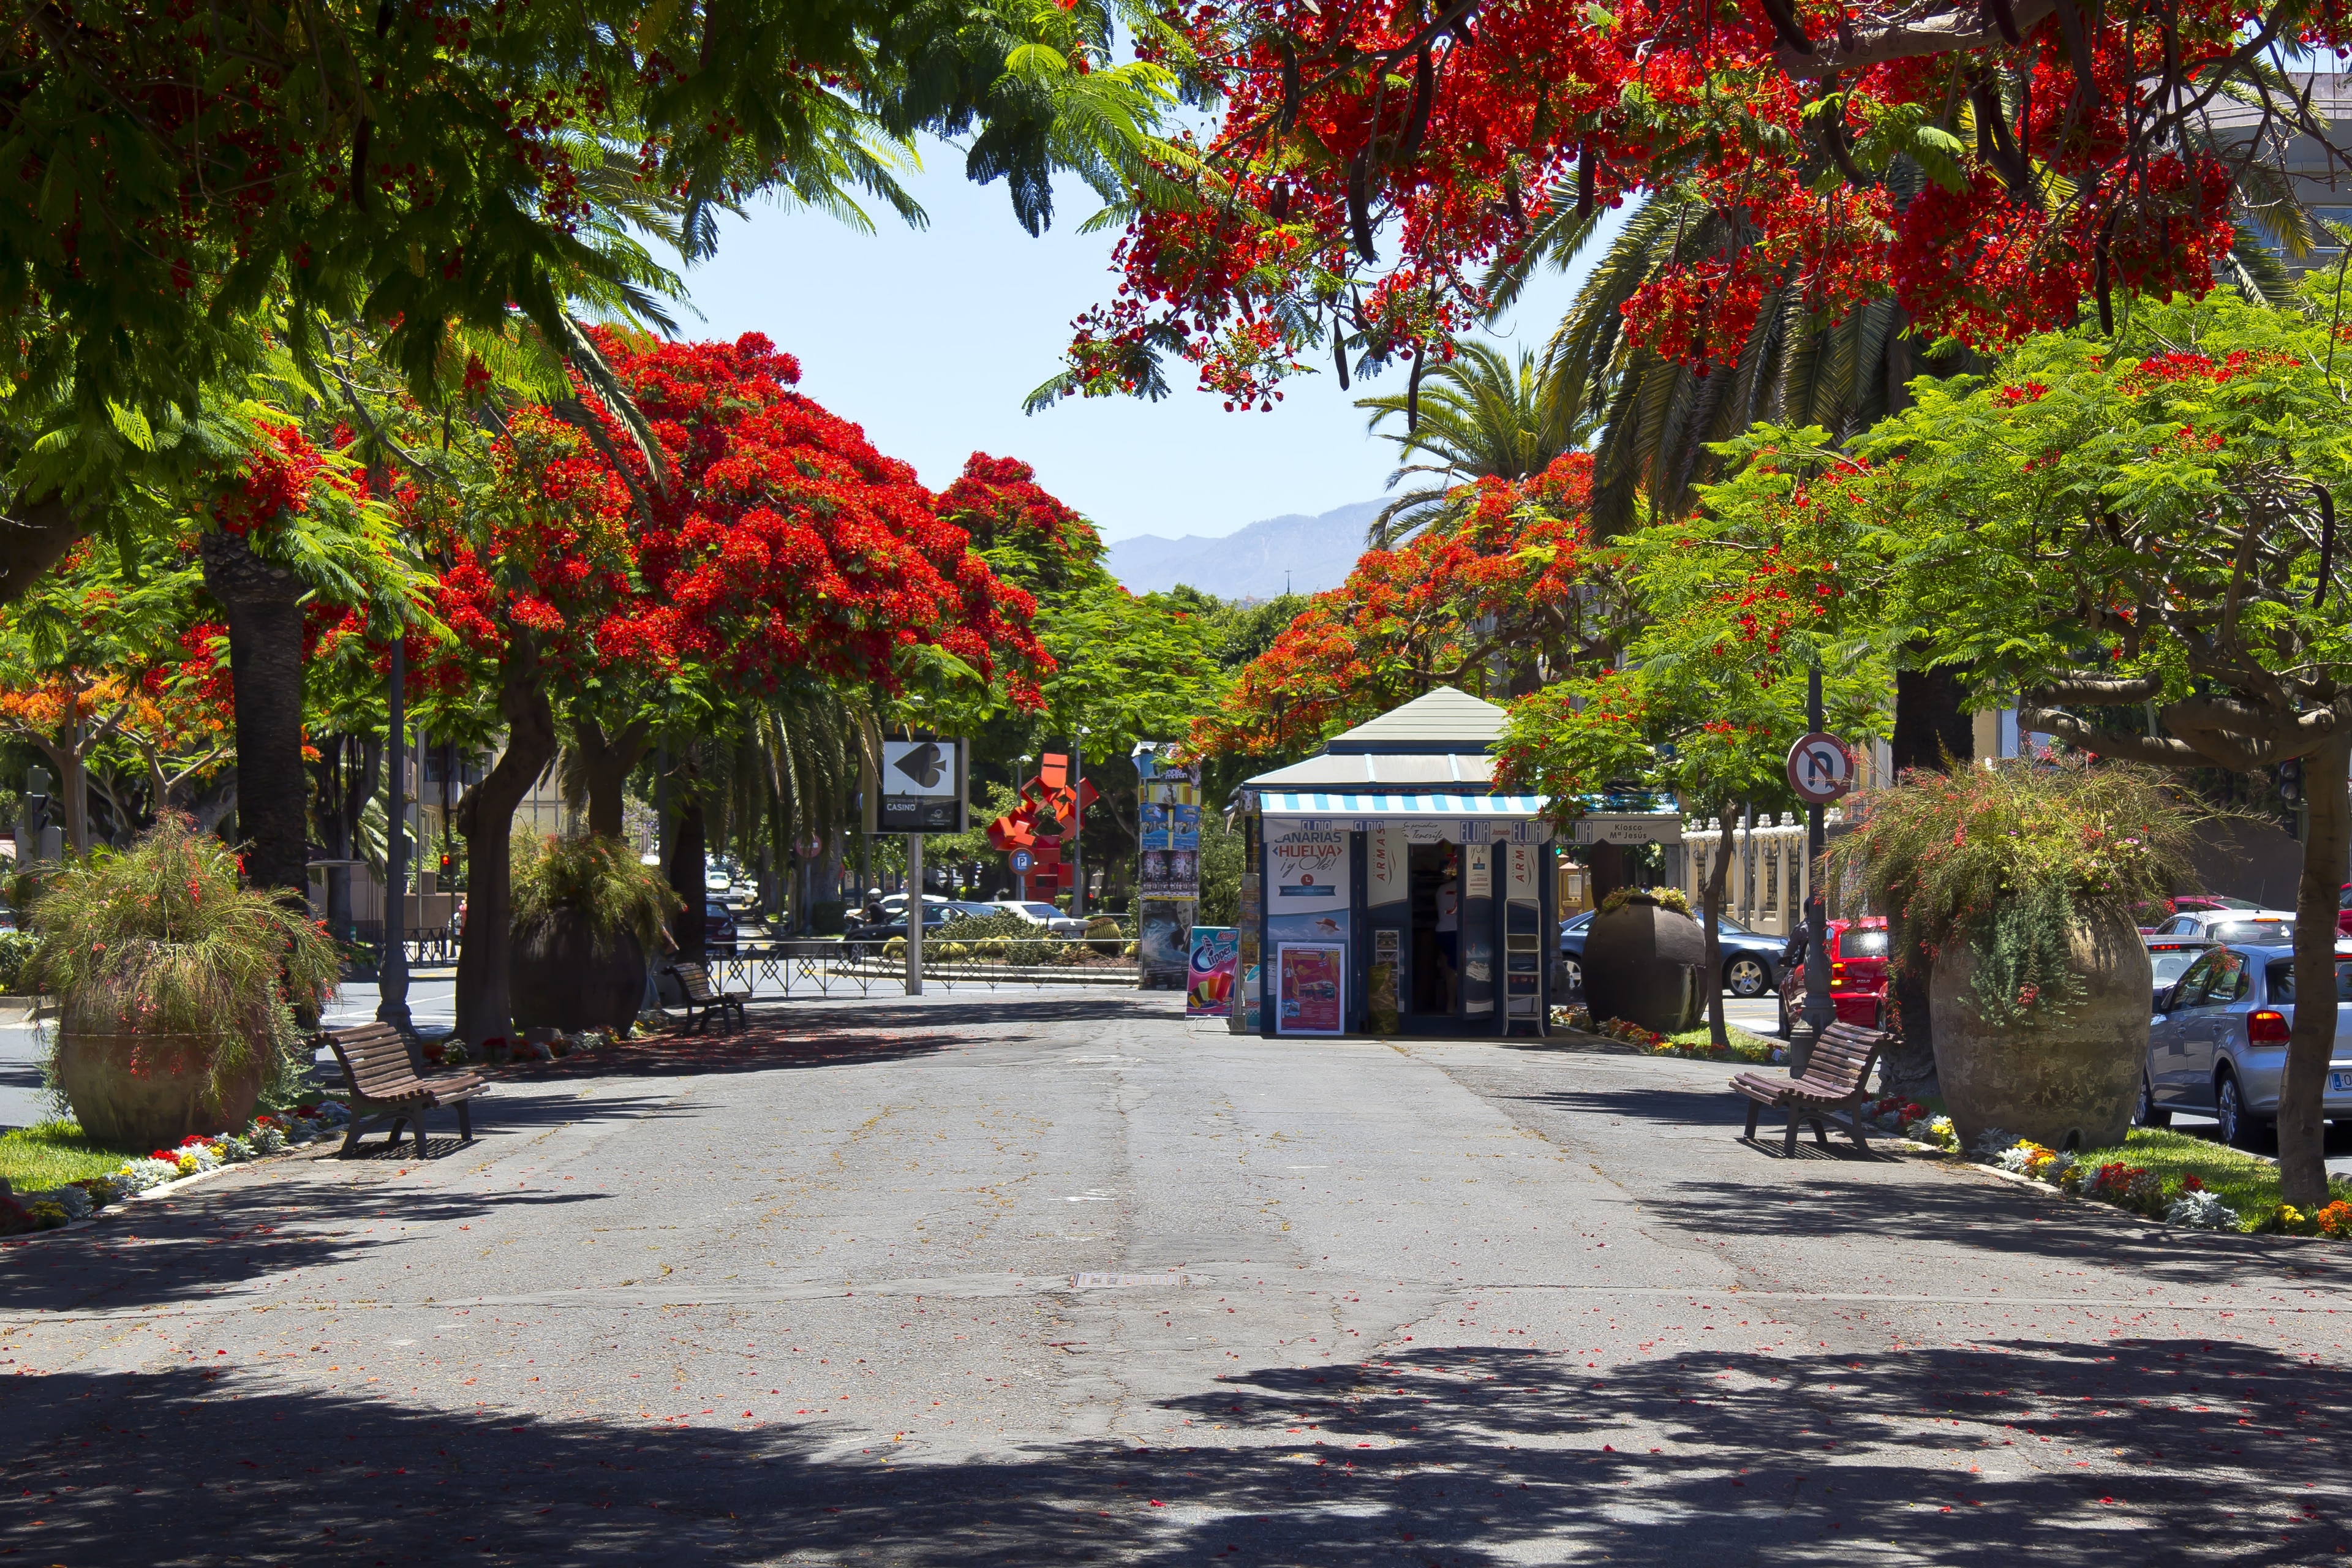 Die Rambla de Santa Cruz ist eine Promenade (Fußgängerallee mit beiderseitiger Hauptverkehrsstraße) in Santa Cruz de Tenerife. Abschnitt oberhalb des Parque García Sanabria